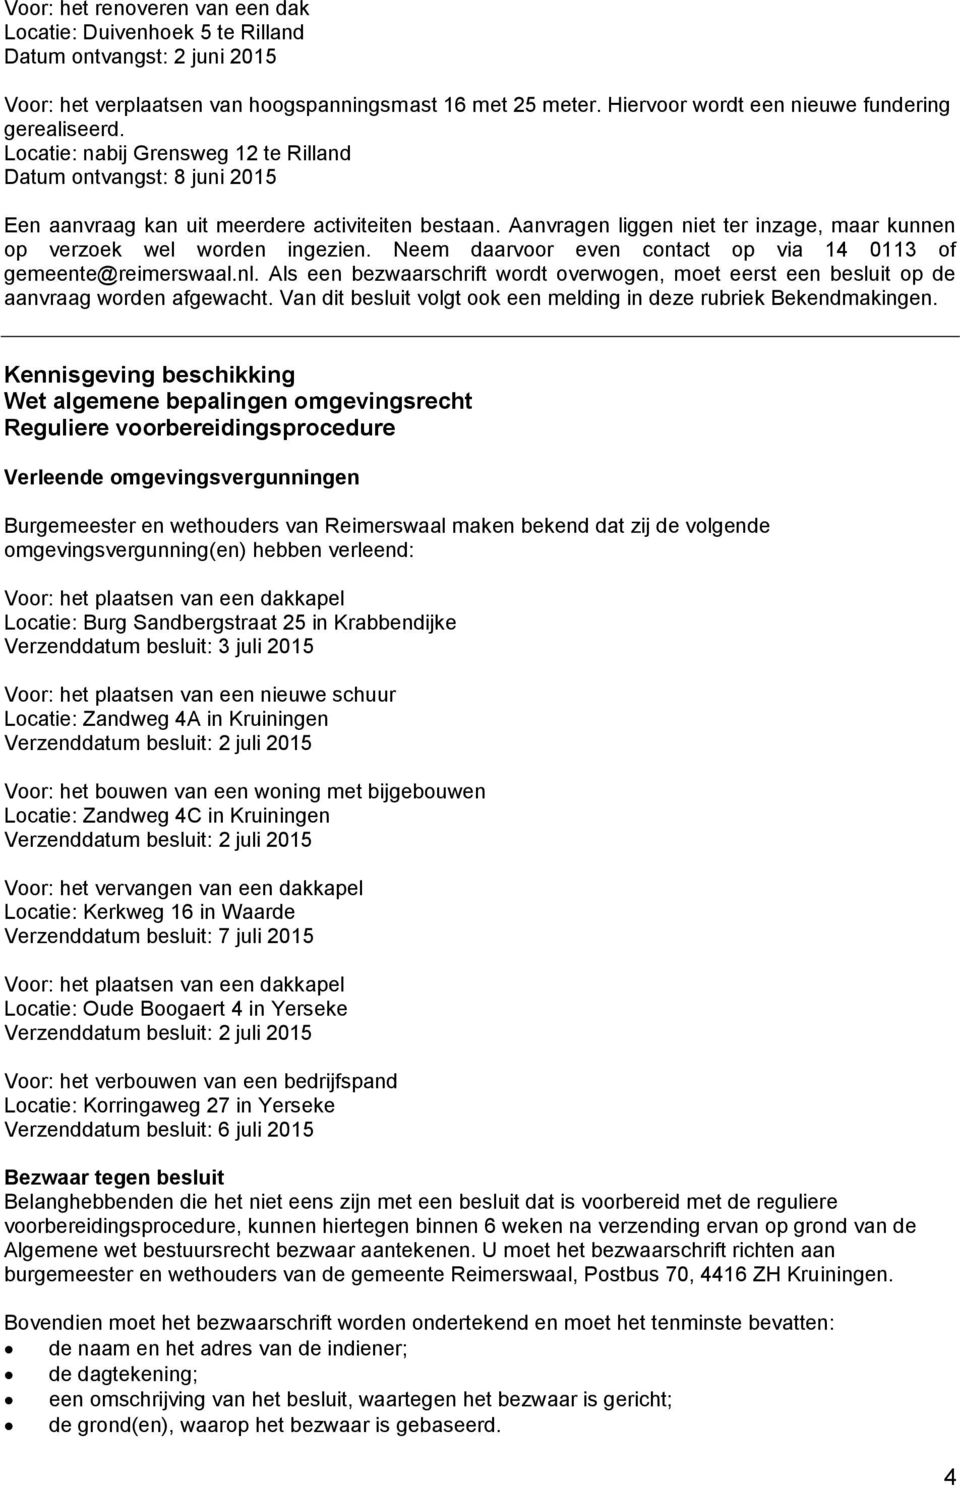 Aanvragen liggen niet ter inzage, maar kunnen op verzoek wel worden ingezien. Neem daarvoor even contact op via 14 0113 of gemeente@reimerswaal.nl.